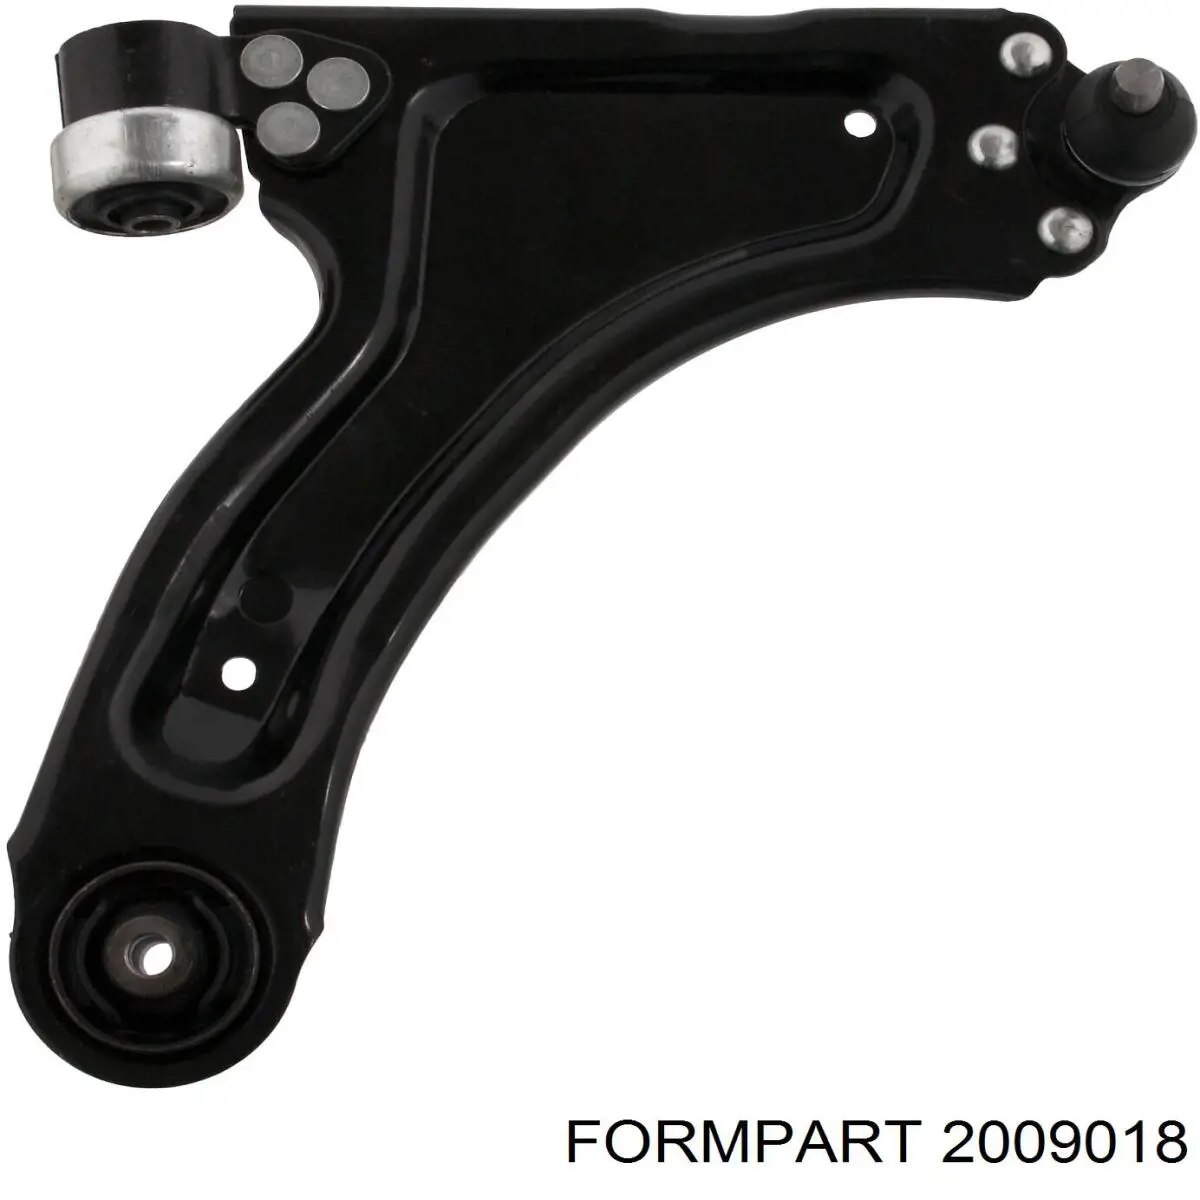 2009018 Formpart/Otoform barra oscilante, suspensión de ruedas delantera, inferior derecha